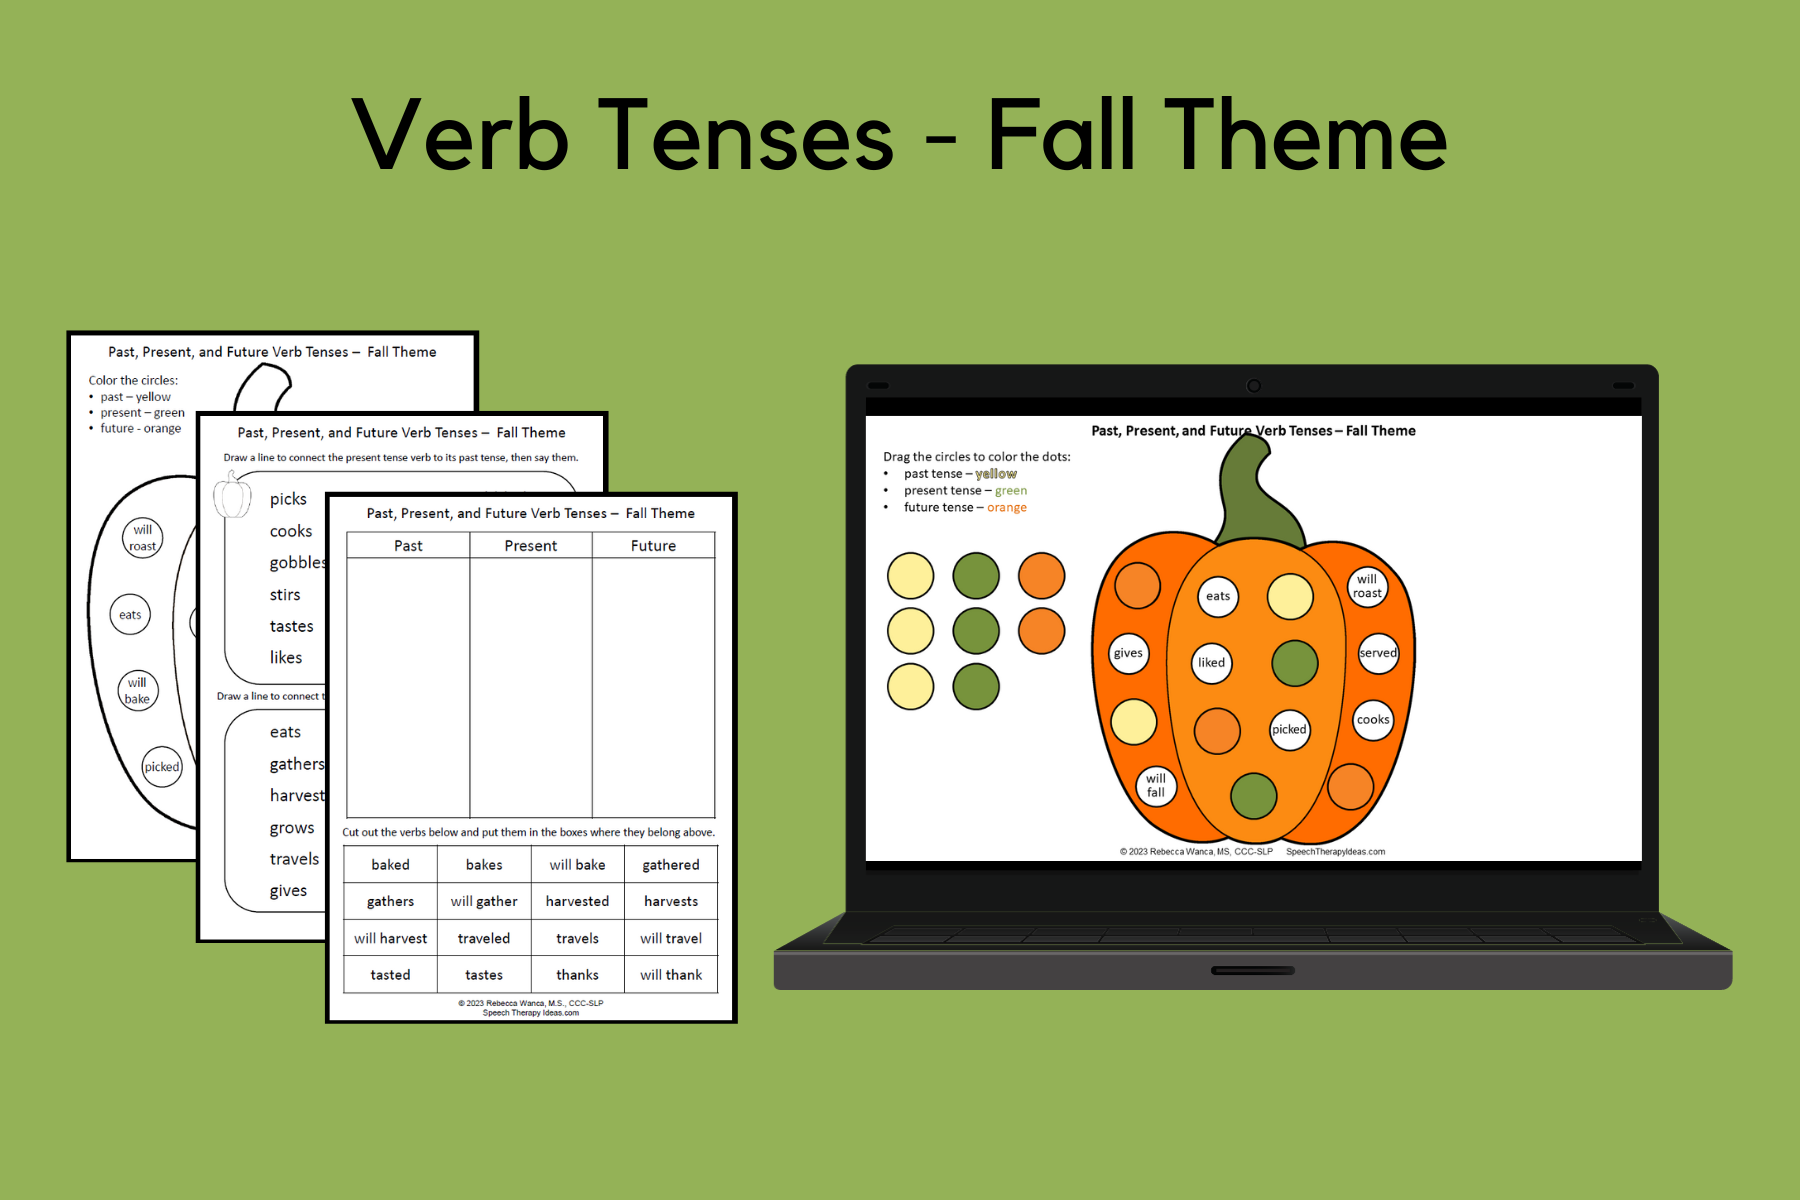 Verb Tenses - Fall Theme